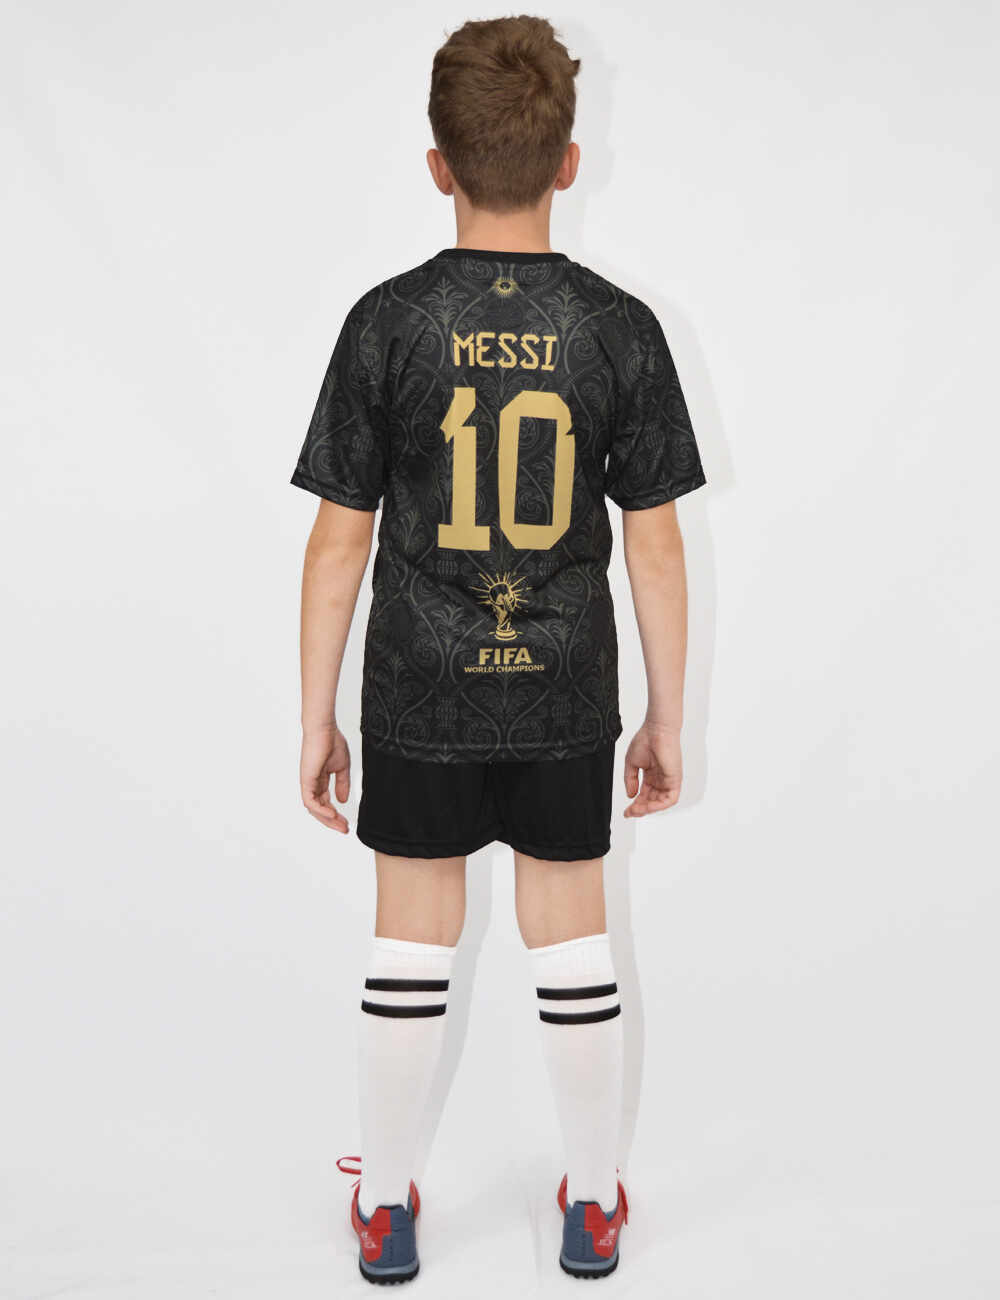 Echipament Messi Editie Limitata M4 (116,152) - Negru, 140 (35-42 Kg)